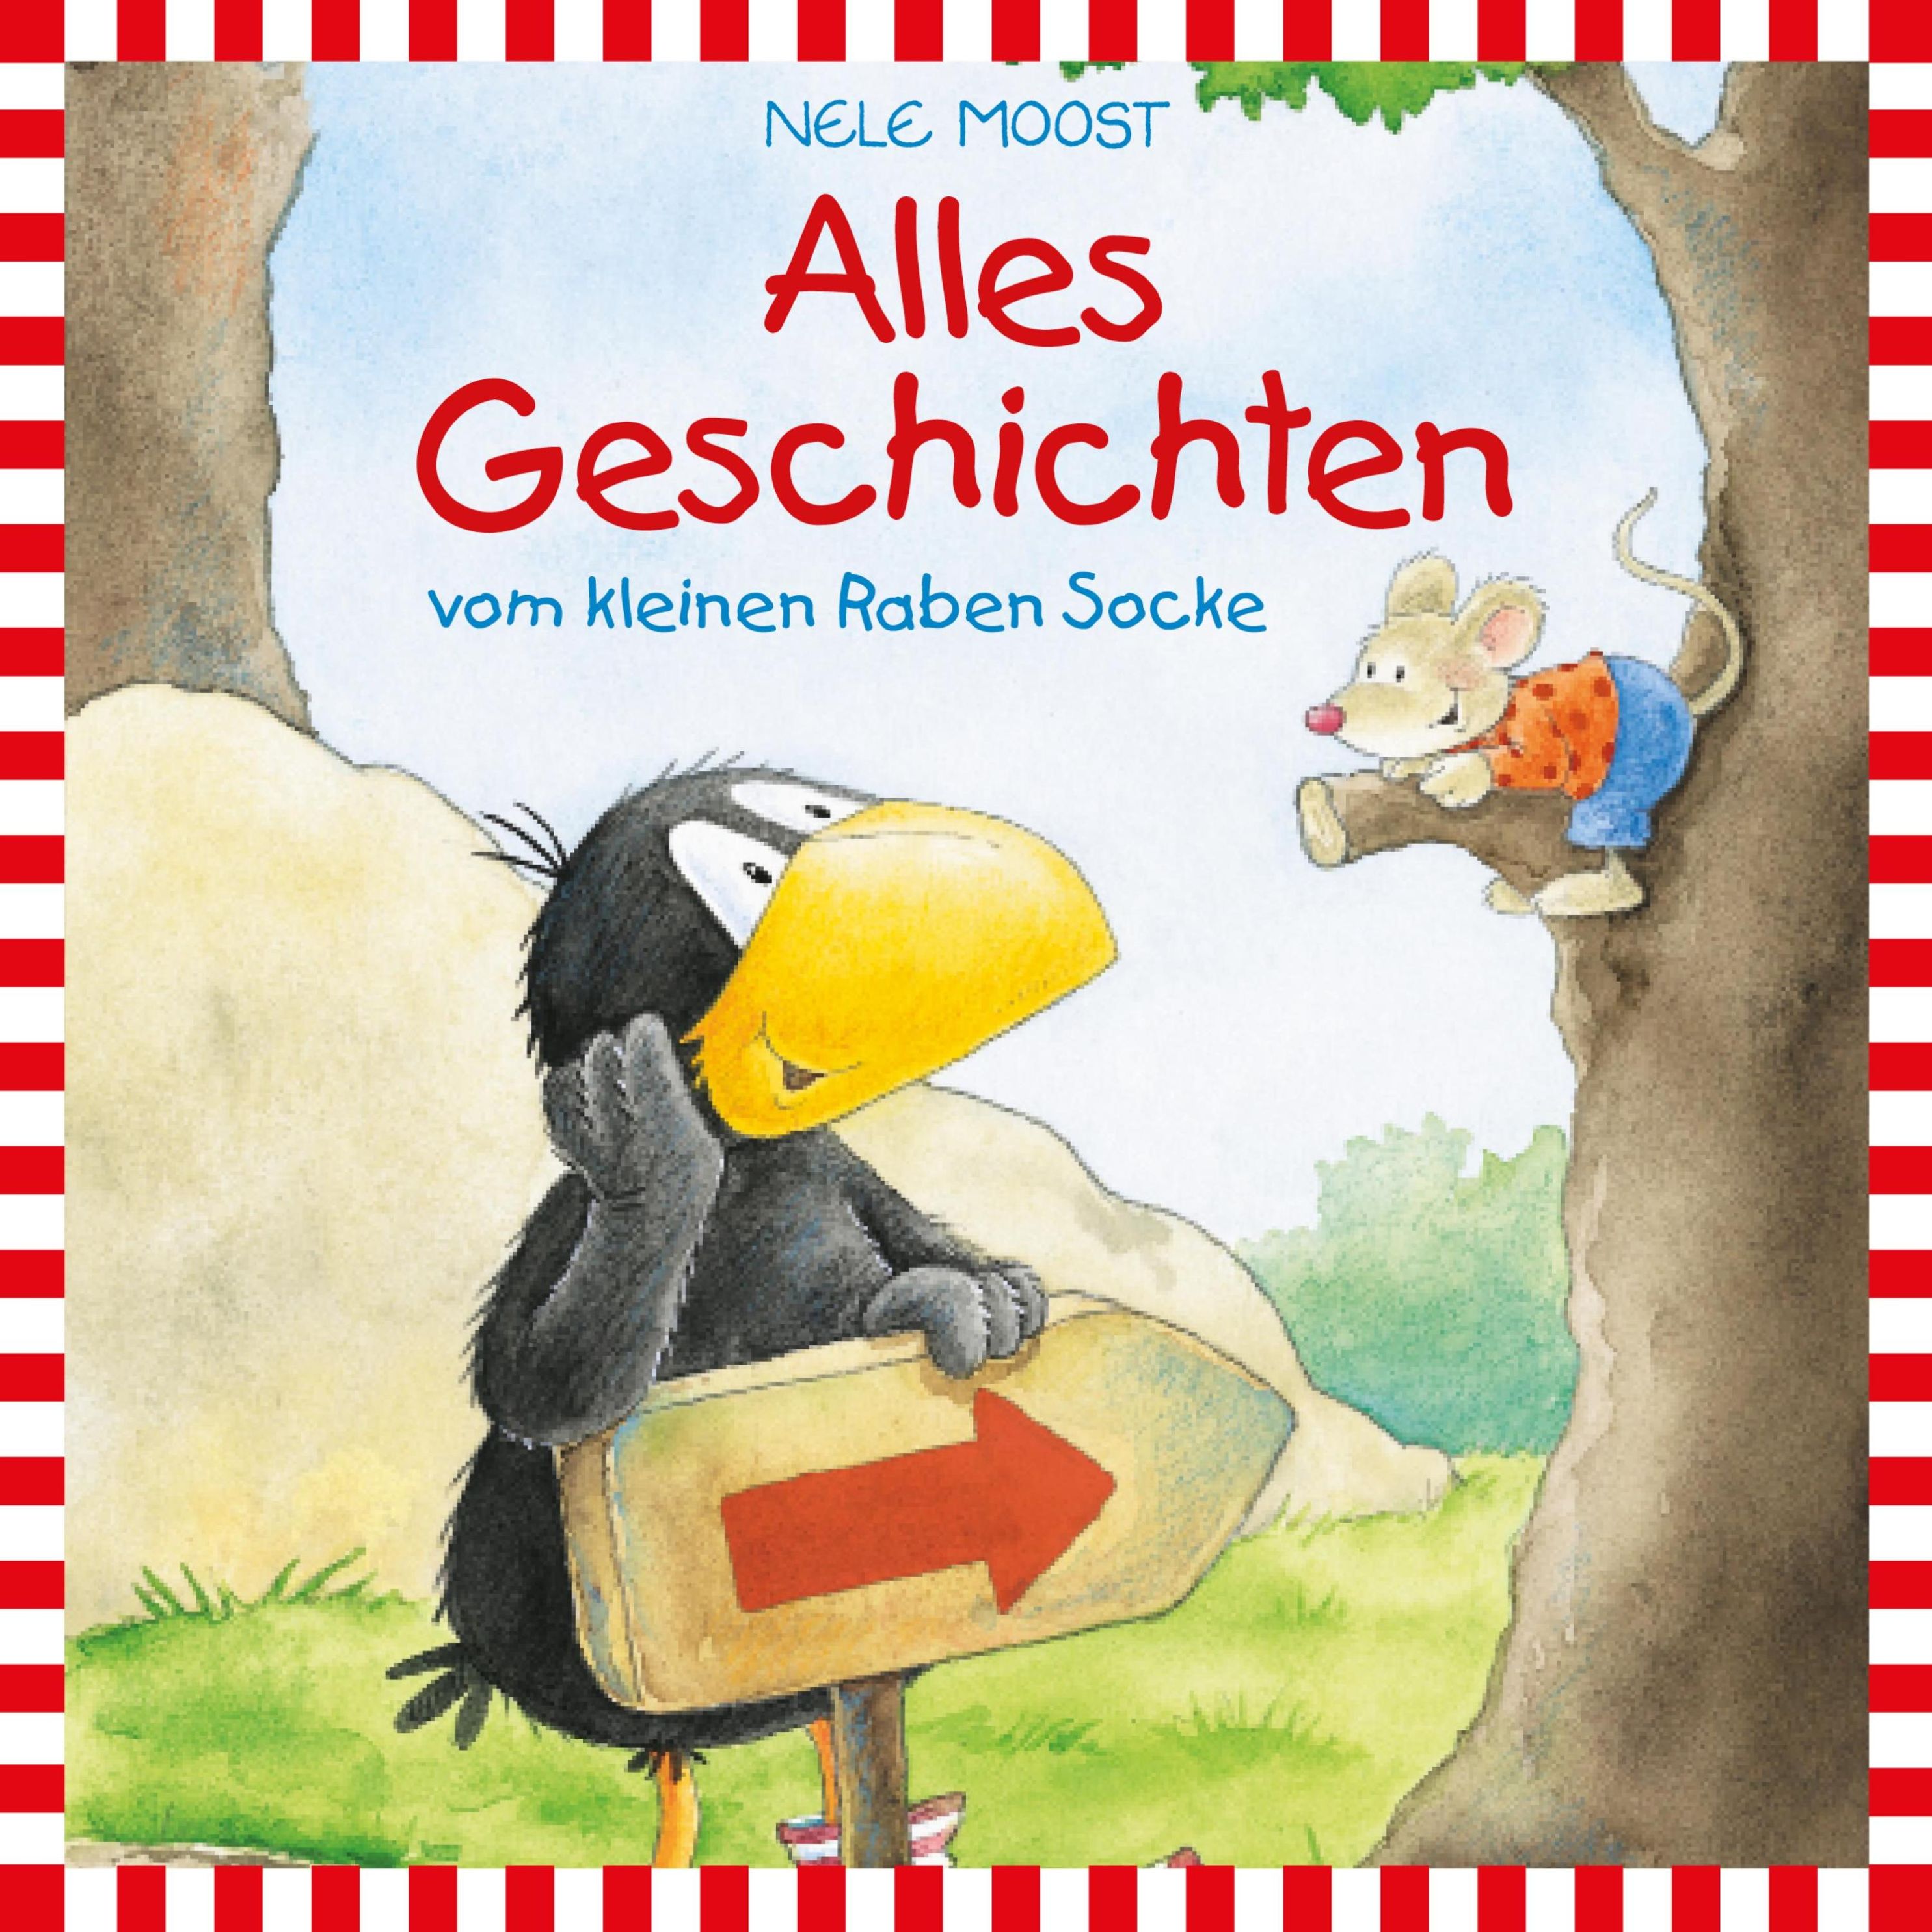 Der kleine Rabe Socke - Der kleine Rabe Socke - Lesungen: Alles Geschichten  vom kleinen Raben Socke Hörbuch Download